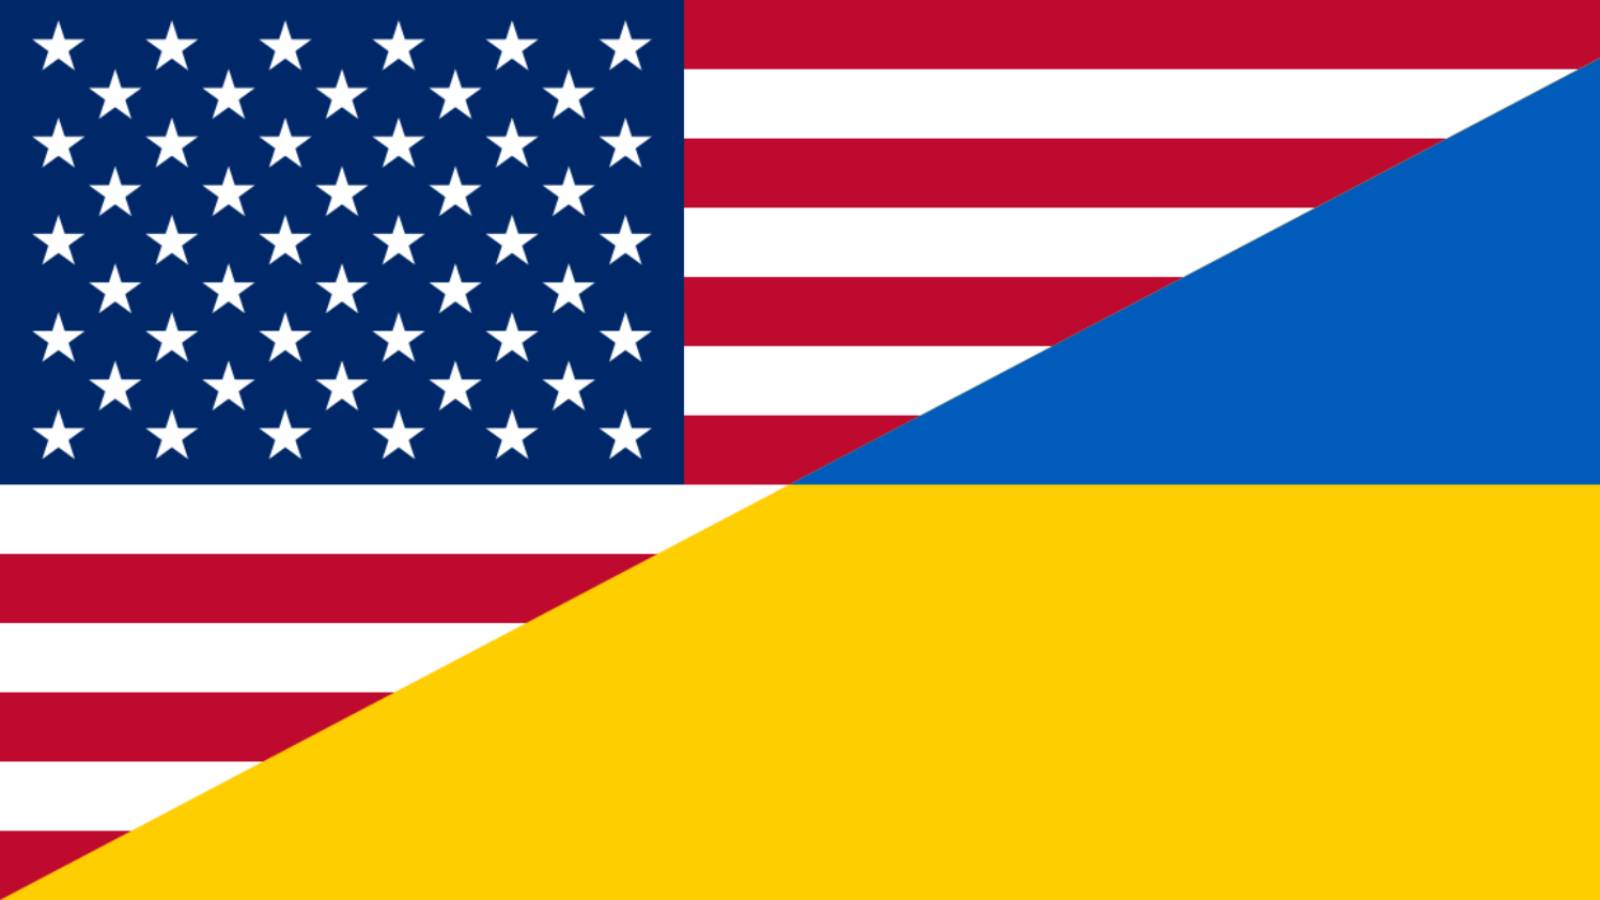 USA liefert neue Verteidigungssysteme der neuesten Generation an die Ukraine